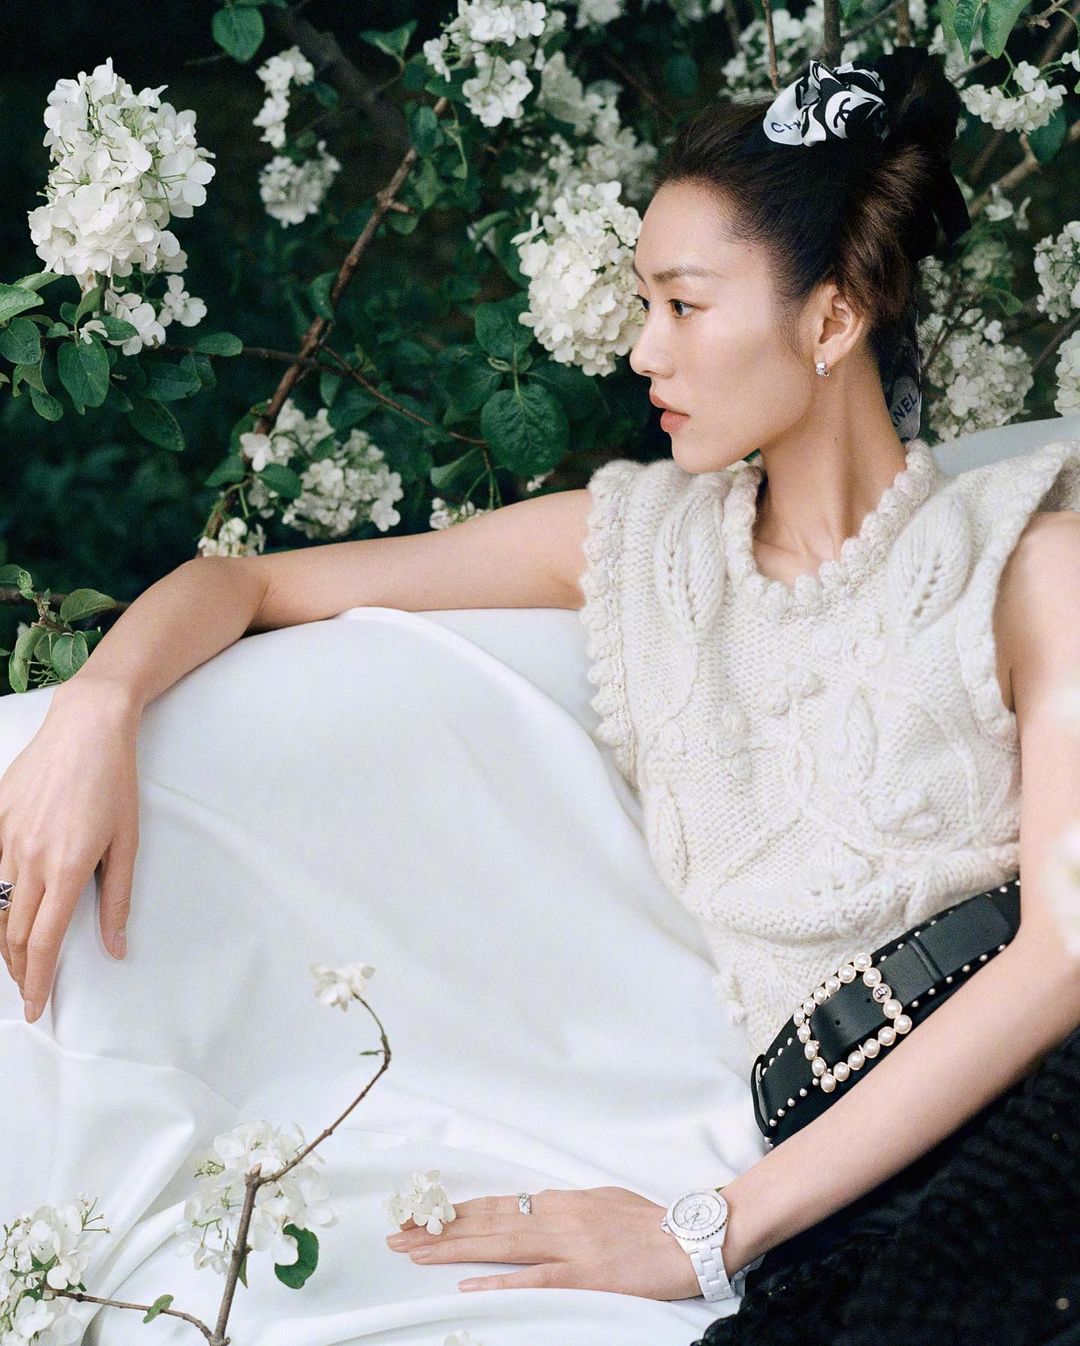 Nàng mẫu sinh năm 1988 diện toàn bộ đồ của Chanel khi xuất hiện trên trang bìa của một trong ngũ đại tạp chí xứ Trung